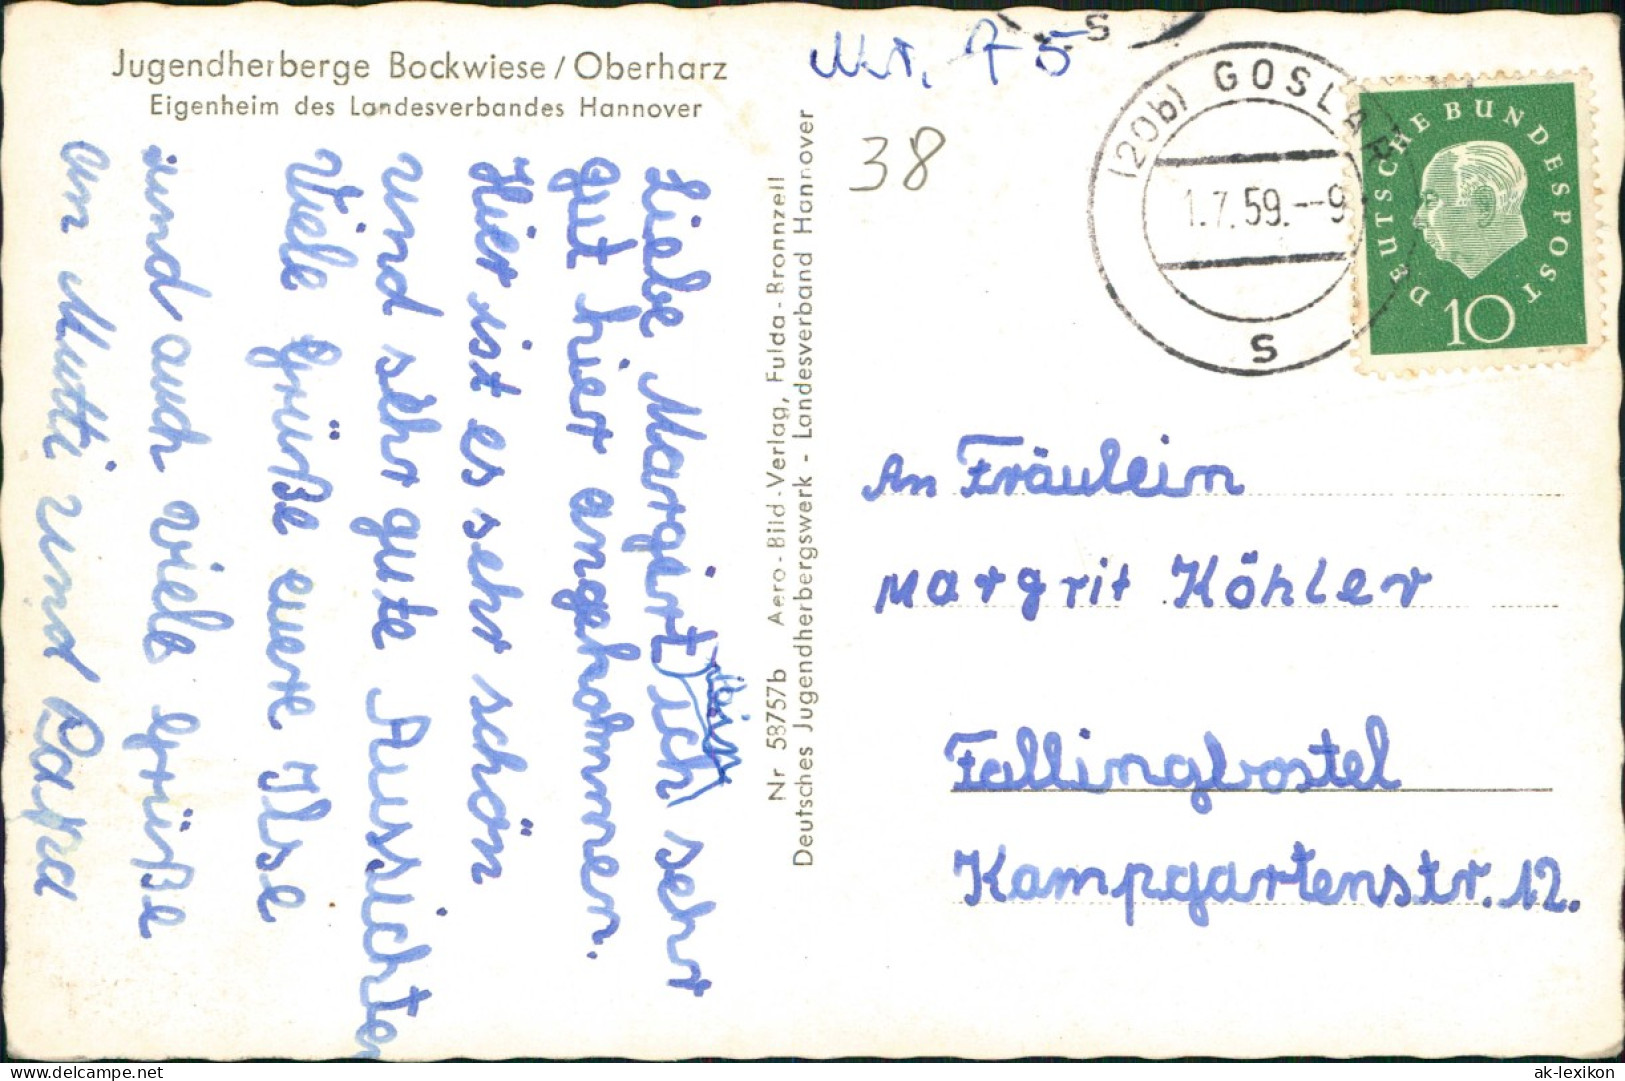 Hahnenklee-Bockswiese-Goslar Jugendherberge Bockwiese Oberharz 1959 - Goslar